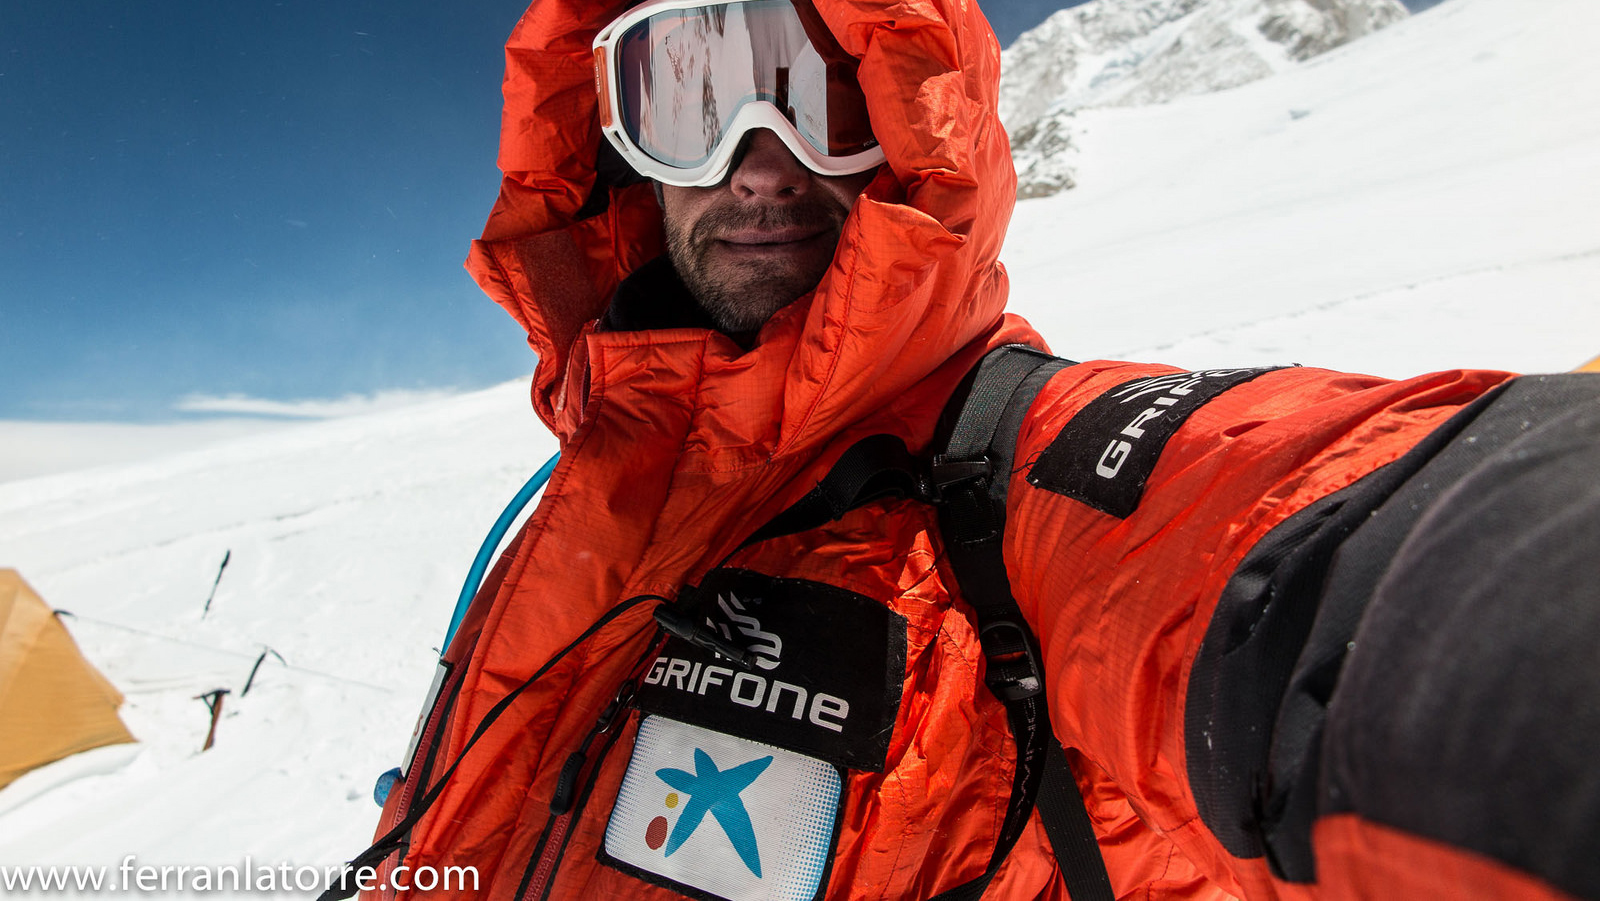 Solo el Everest se interpone entre Ferran Latorre y el reto de su vida